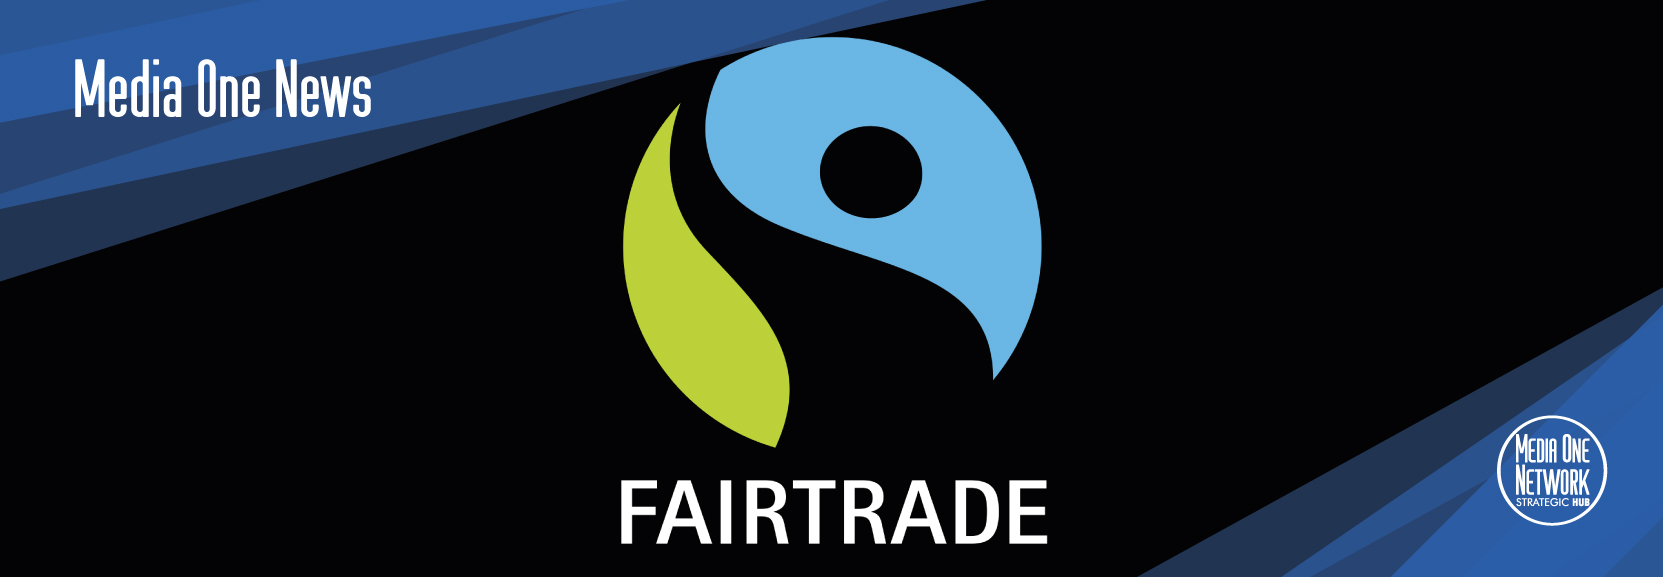 Fairtrade, un sistema di commercio che tutela i lavoratori e l’ambiente